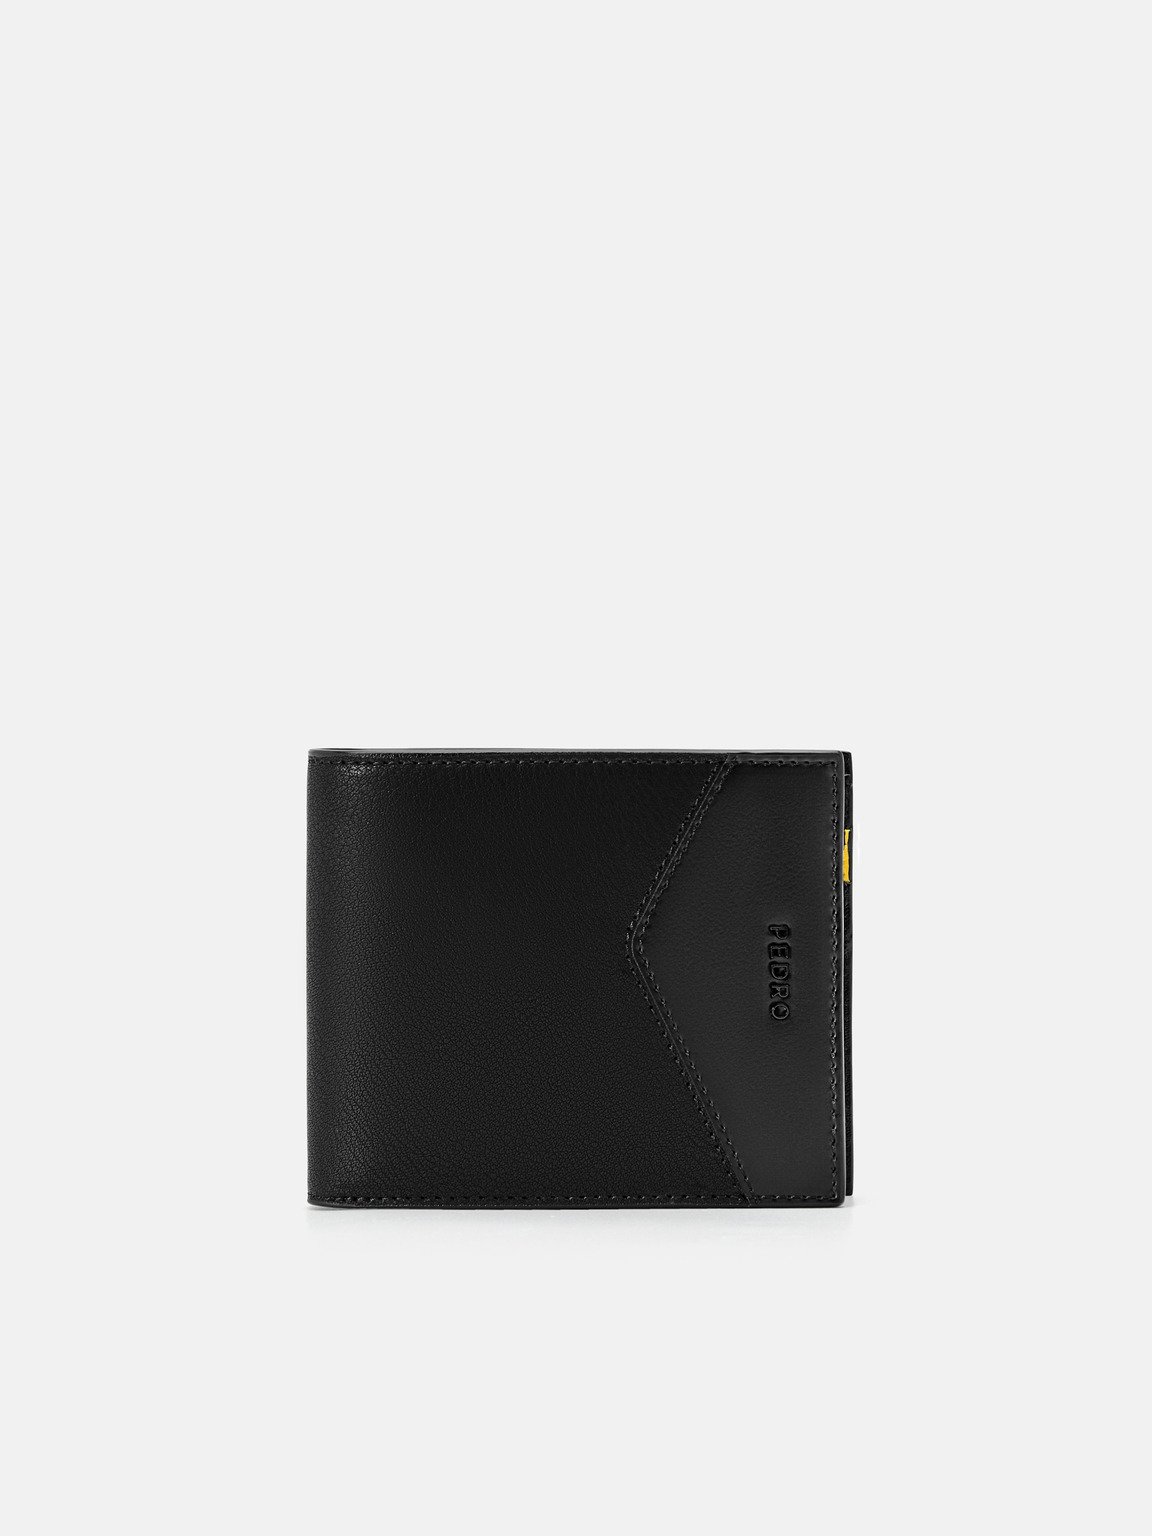 皮革雙折疊錢包, 黑色